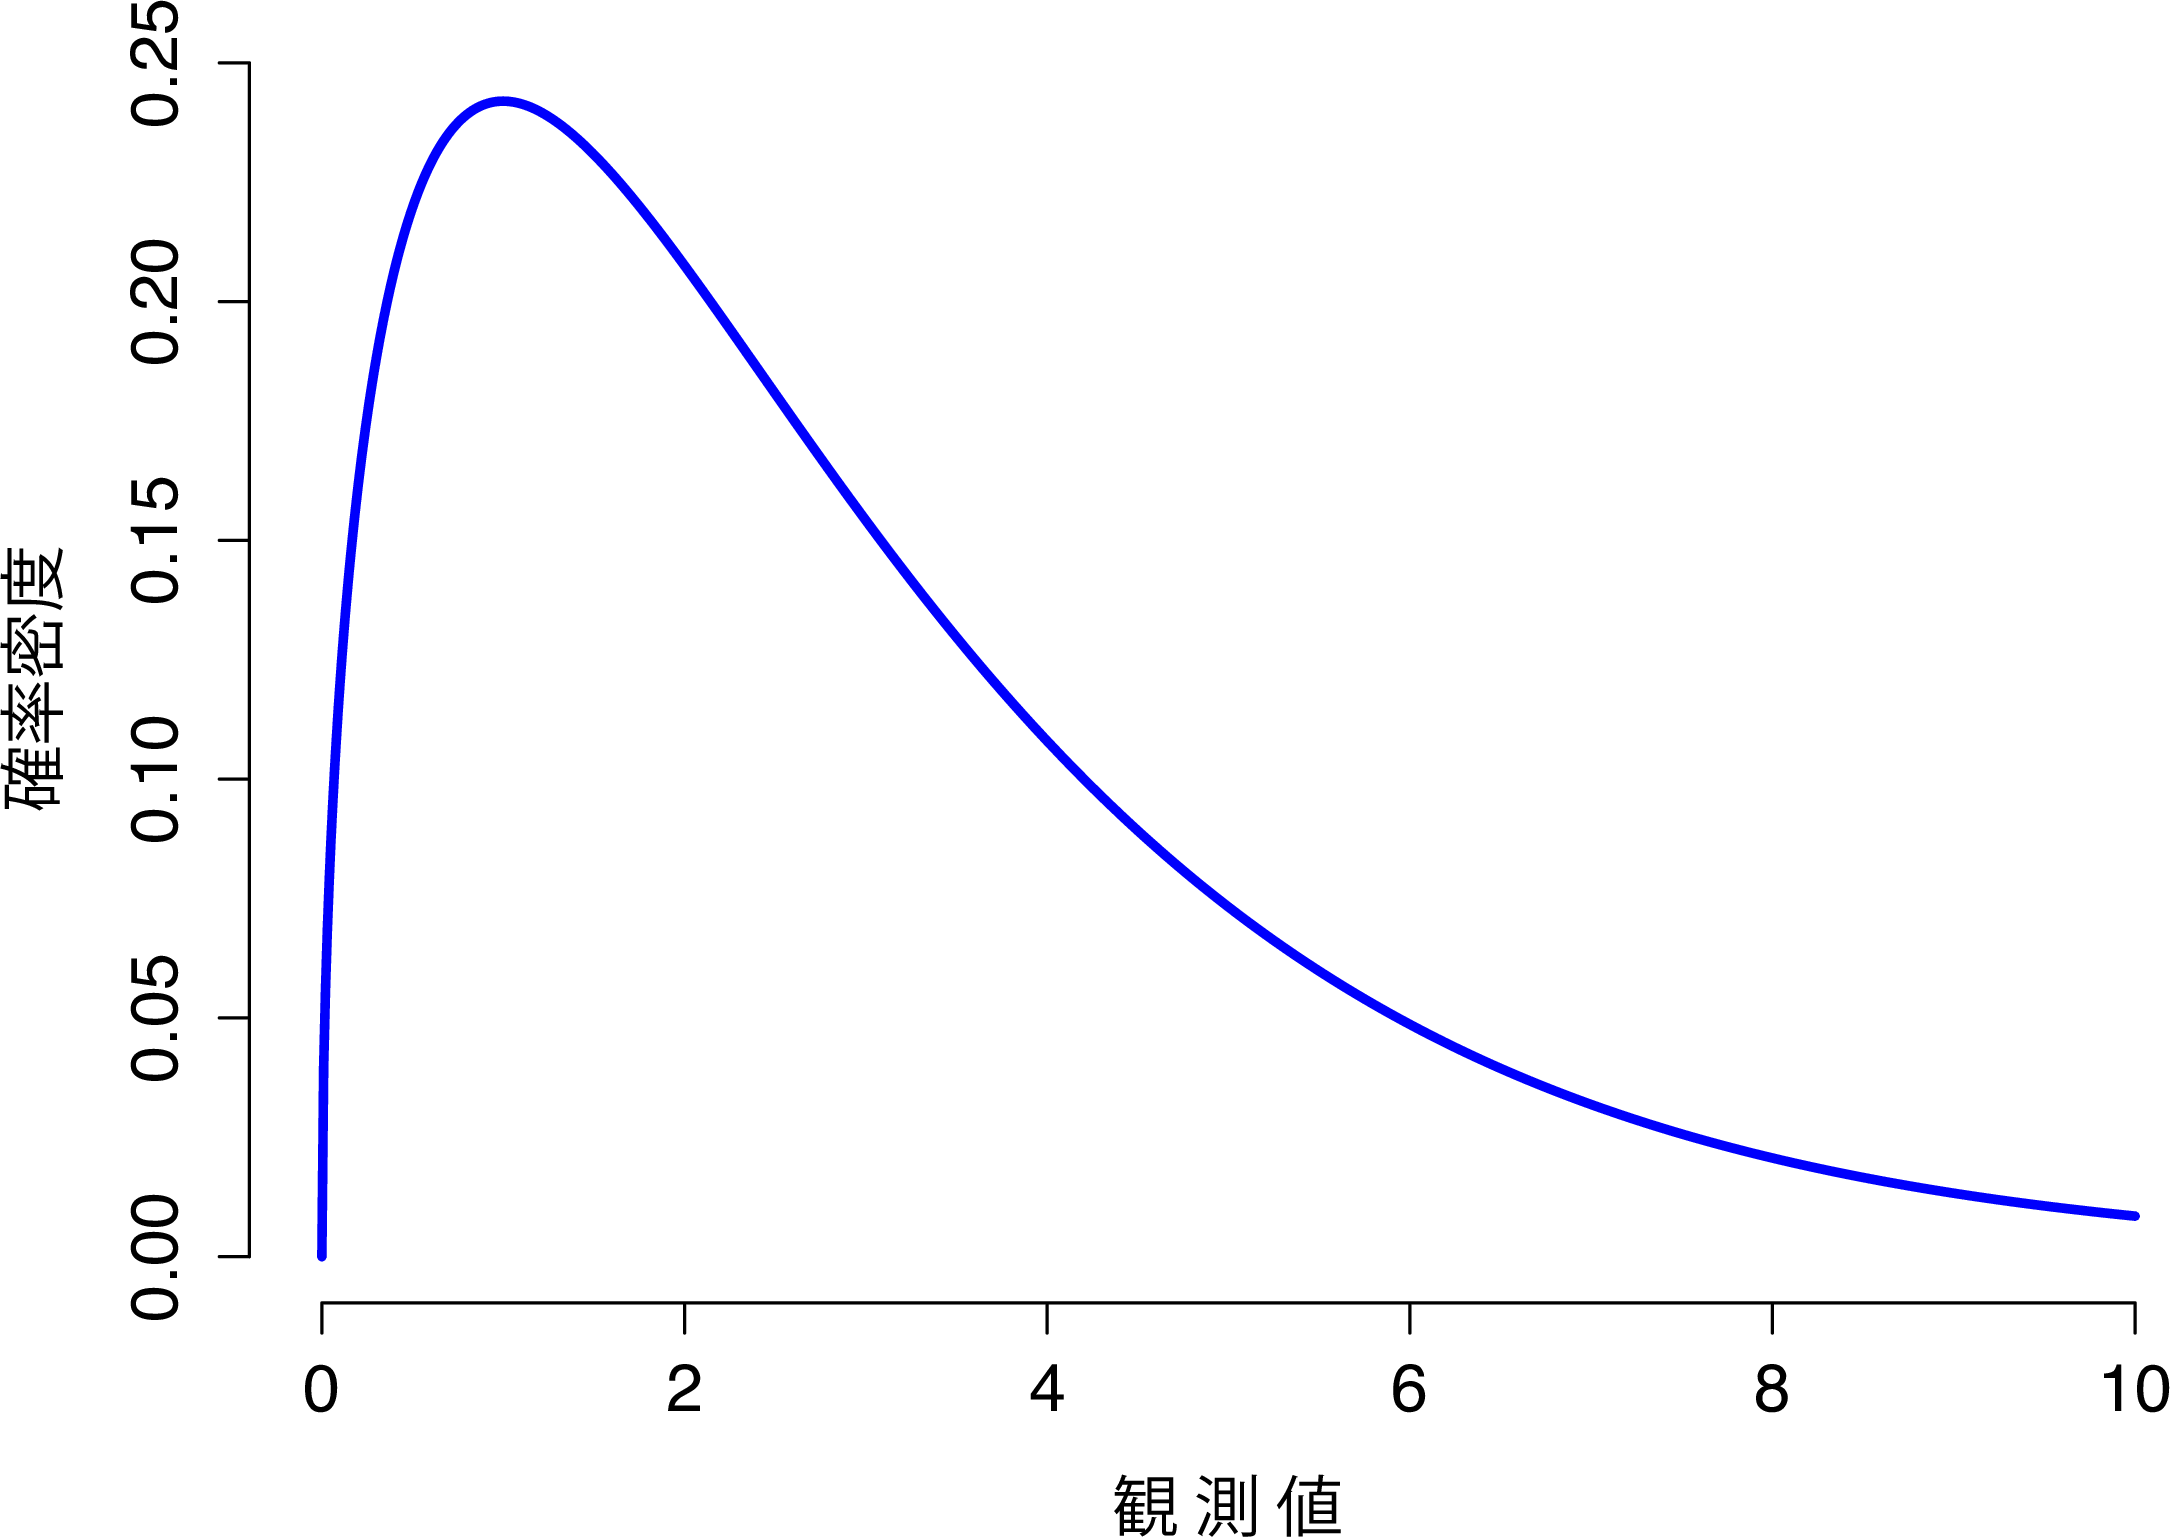 自由度が3の\(\chi^2\)分布。観測値はつねにゼロより大きくなければならず，分布がかなり歪んだ形になっている点に注意。それらの点は\(\chi^2\)分布における重要な特徴である。